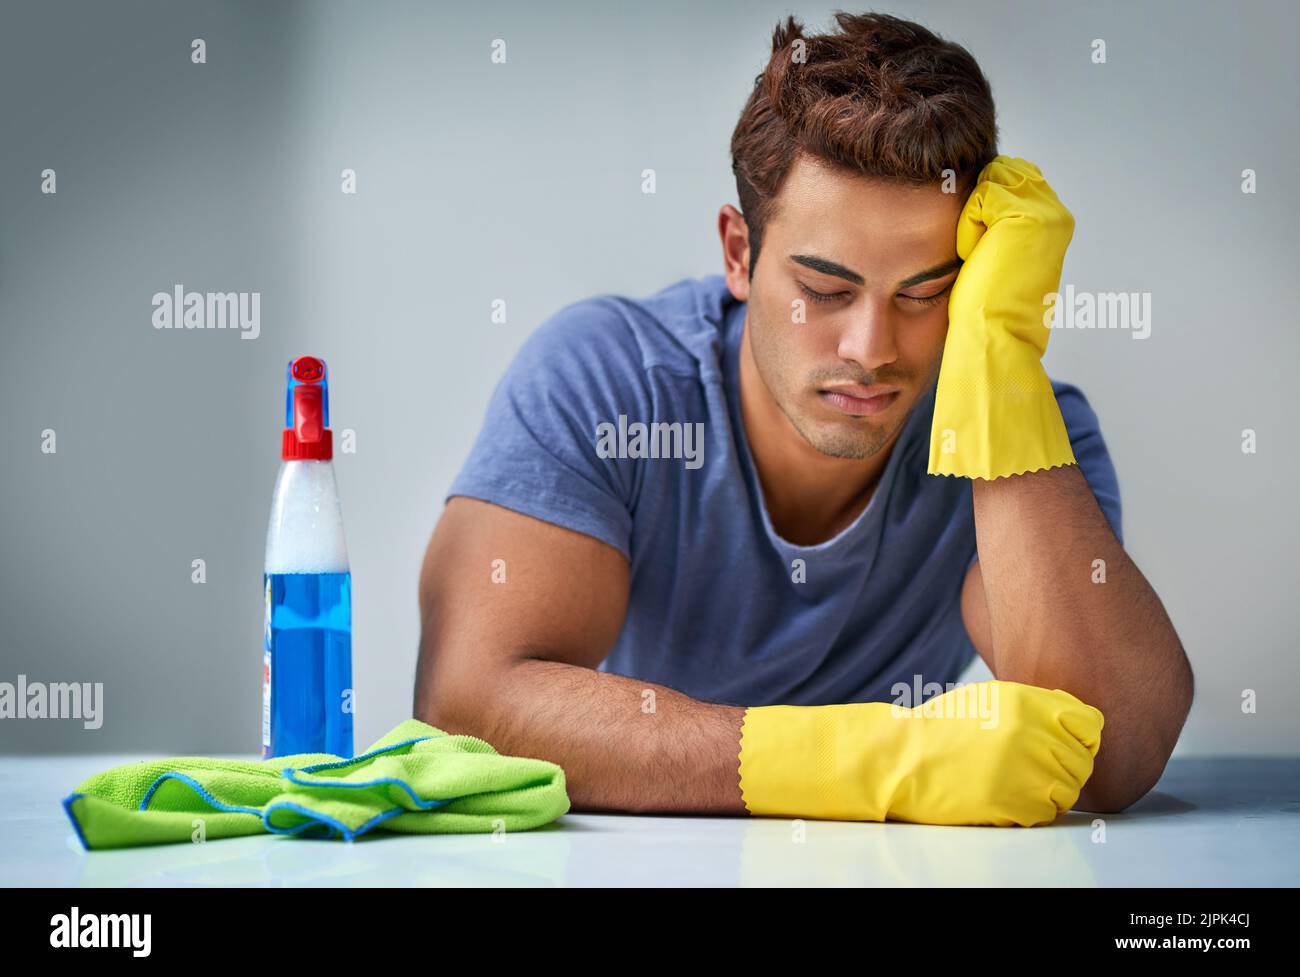 HES endlich fertig, aber erschöpft. Ein junger Mann macht Hausarbeiten. Stockfoto